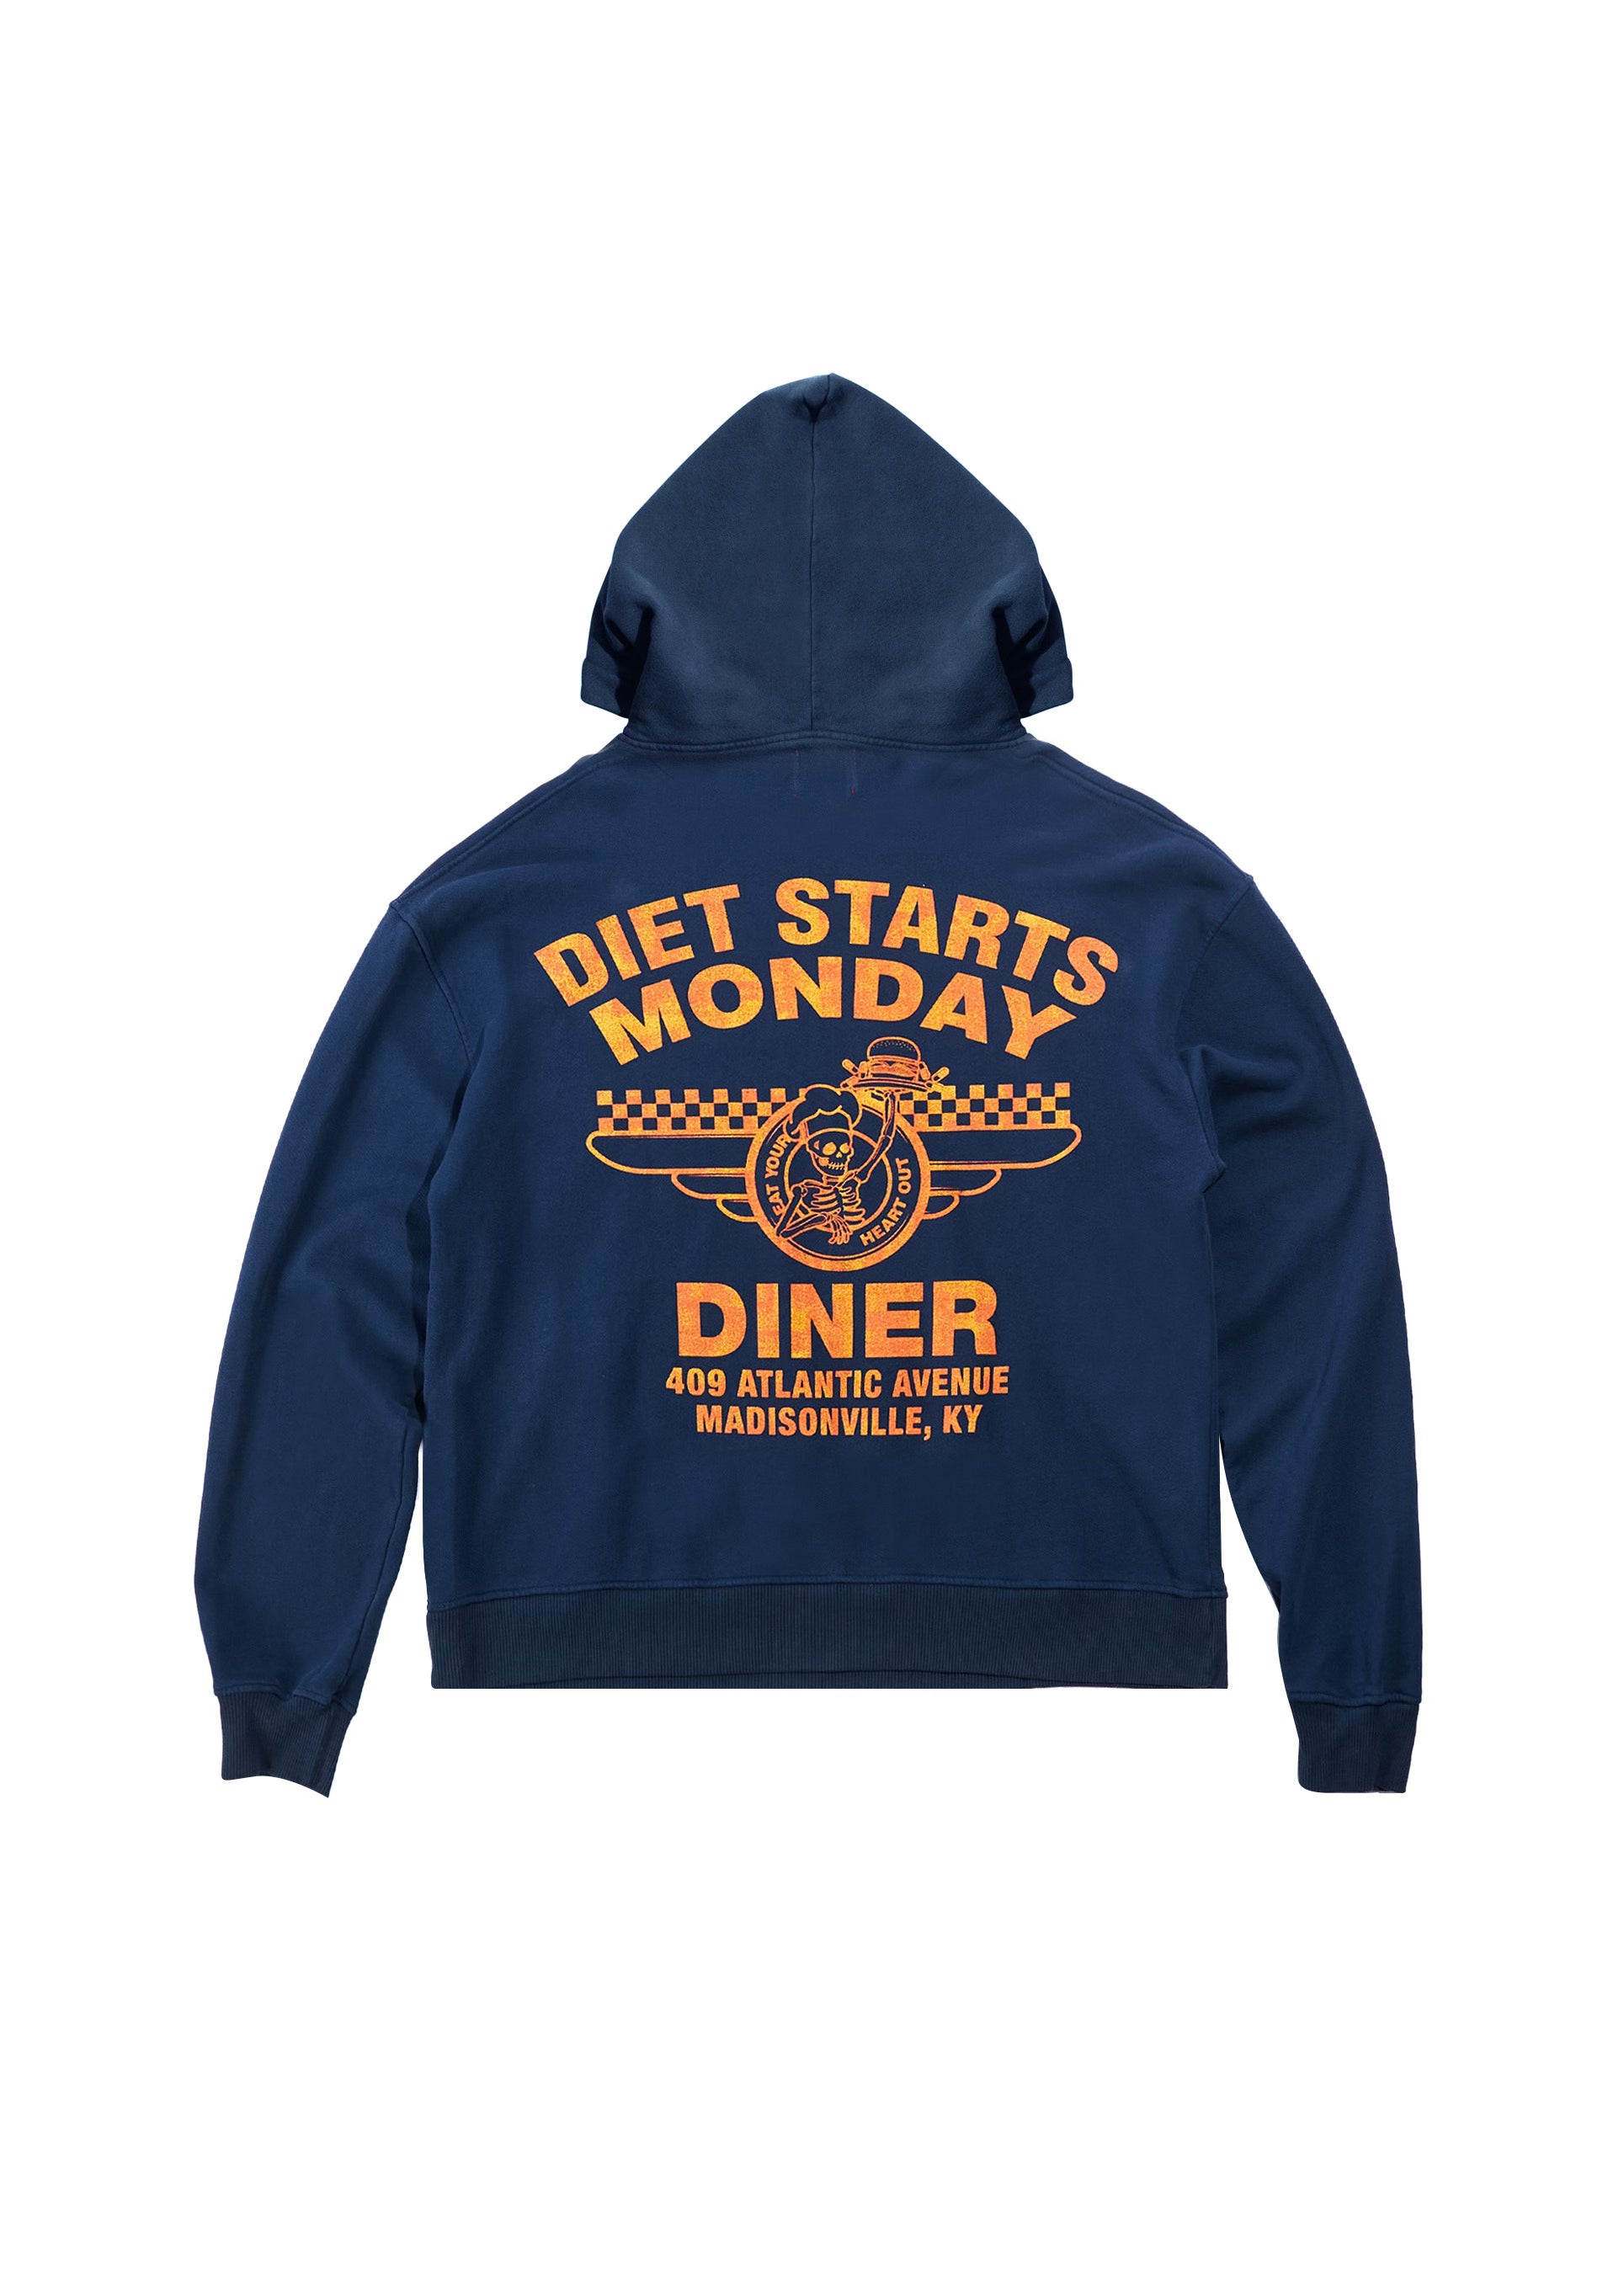 Diner Hoodie - Navy